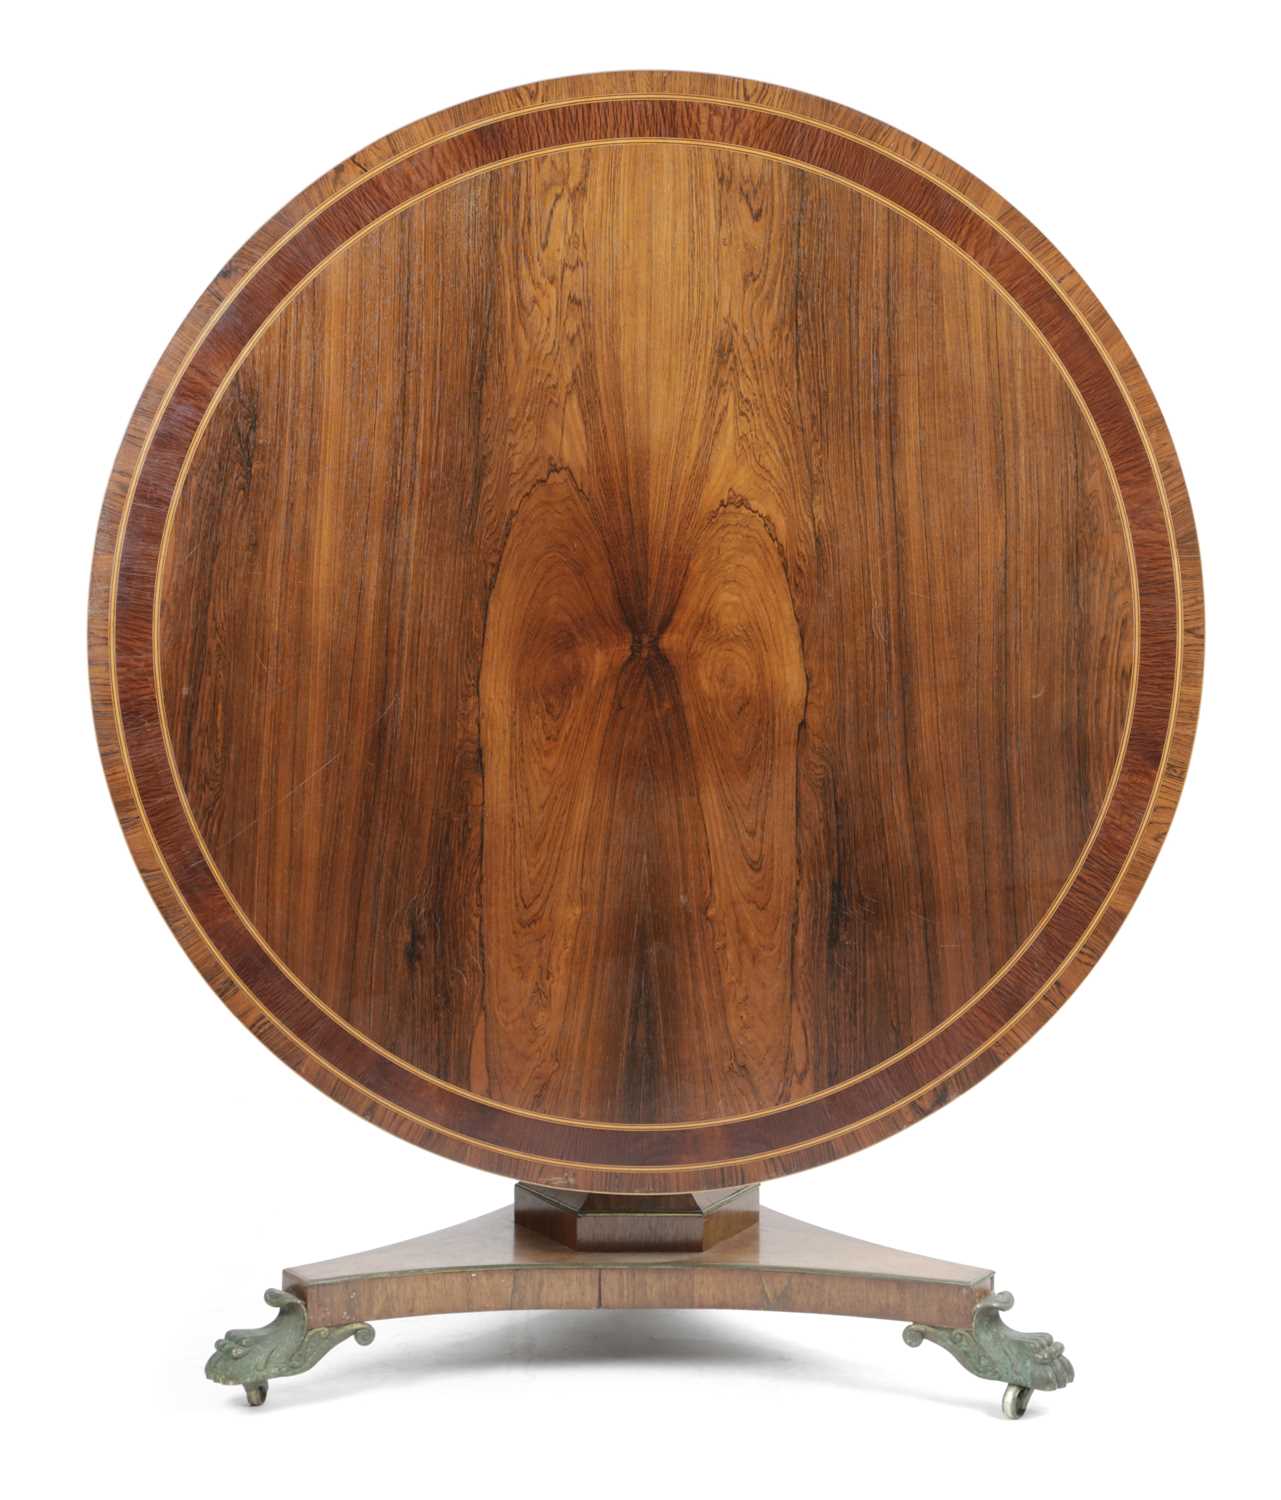 λ A REGENCY ROSEWOOD CENTRE TABLE EARLY 19TH CENTURY the circular tilt-top with partridge wood - Image 3 of 3